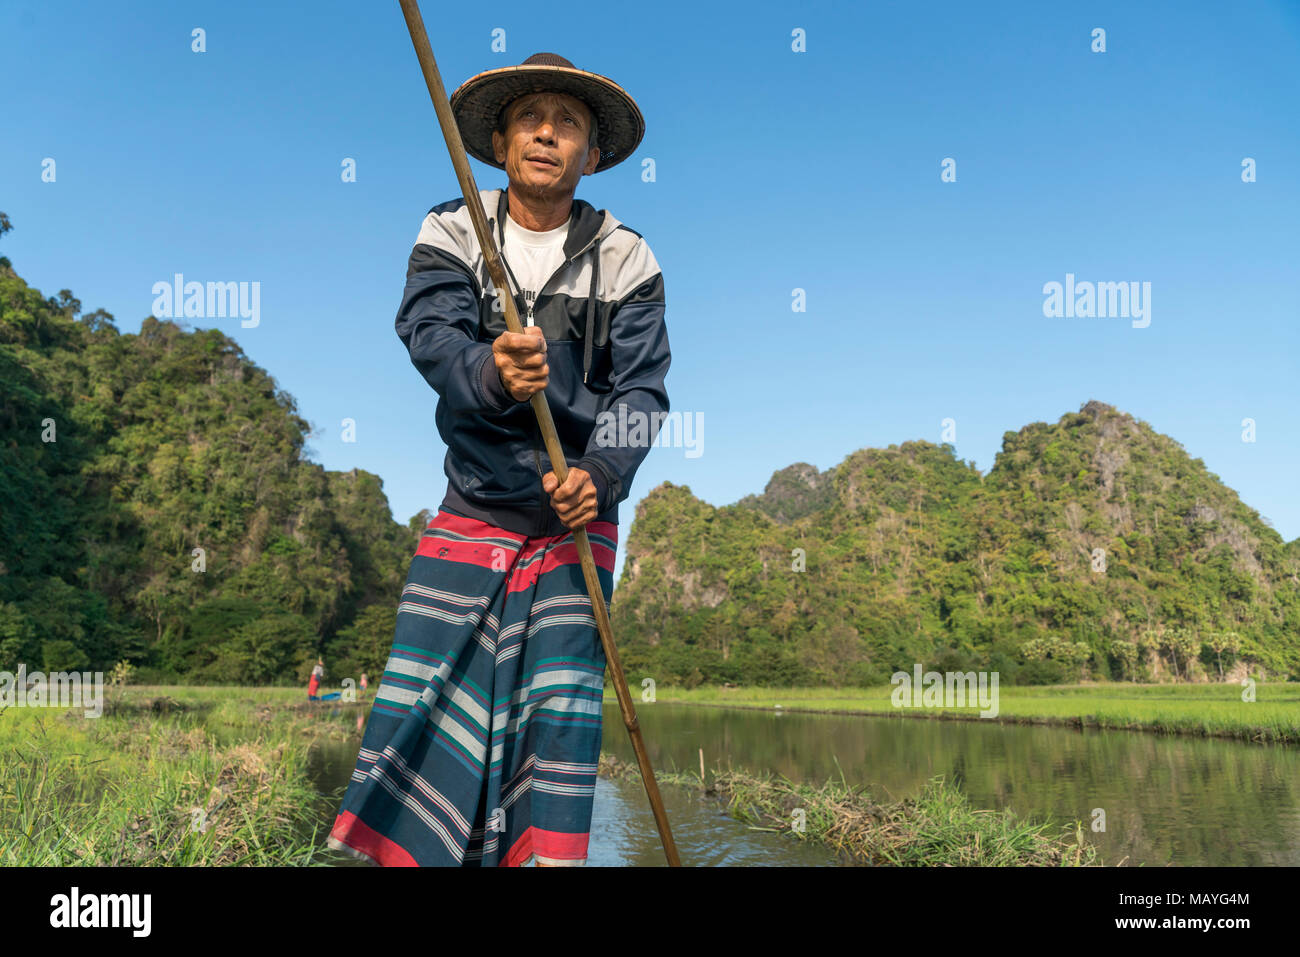 einheimischer Ruderer auf dem Weg zur Saddan-Höhle, Hpa-an, Myanmar, Asien  |  Local rowers on the lake near Saddan Cave, Hpa-an, Myanmar, Asia Stock Photo